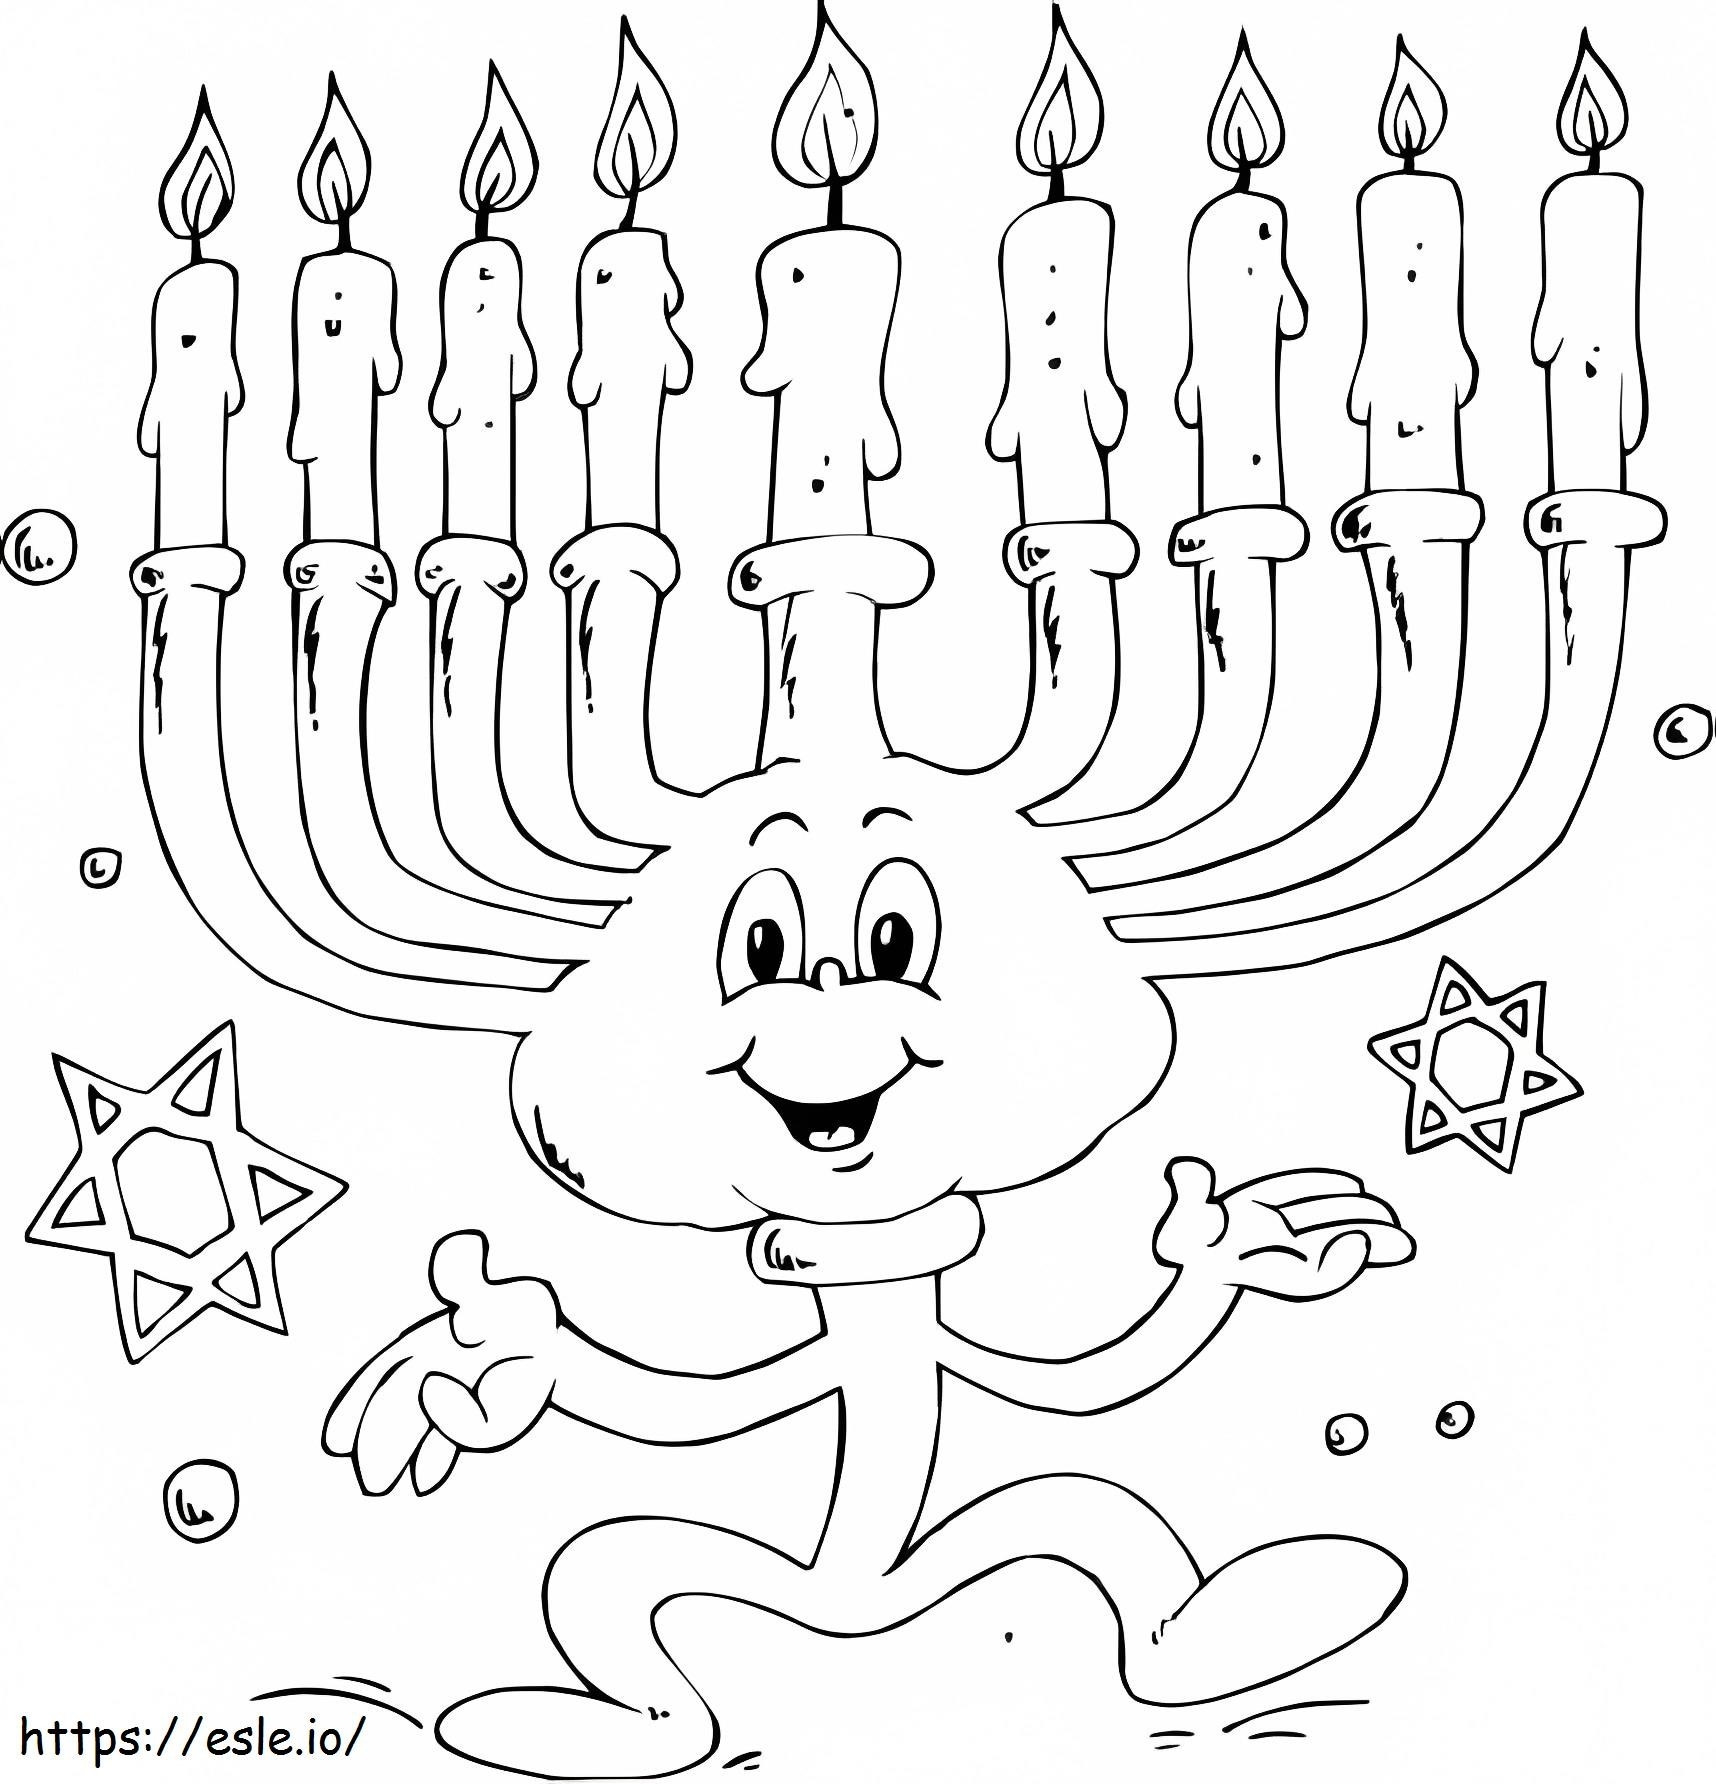 Menorá de Hanukkah dos desenhos animados para colorir